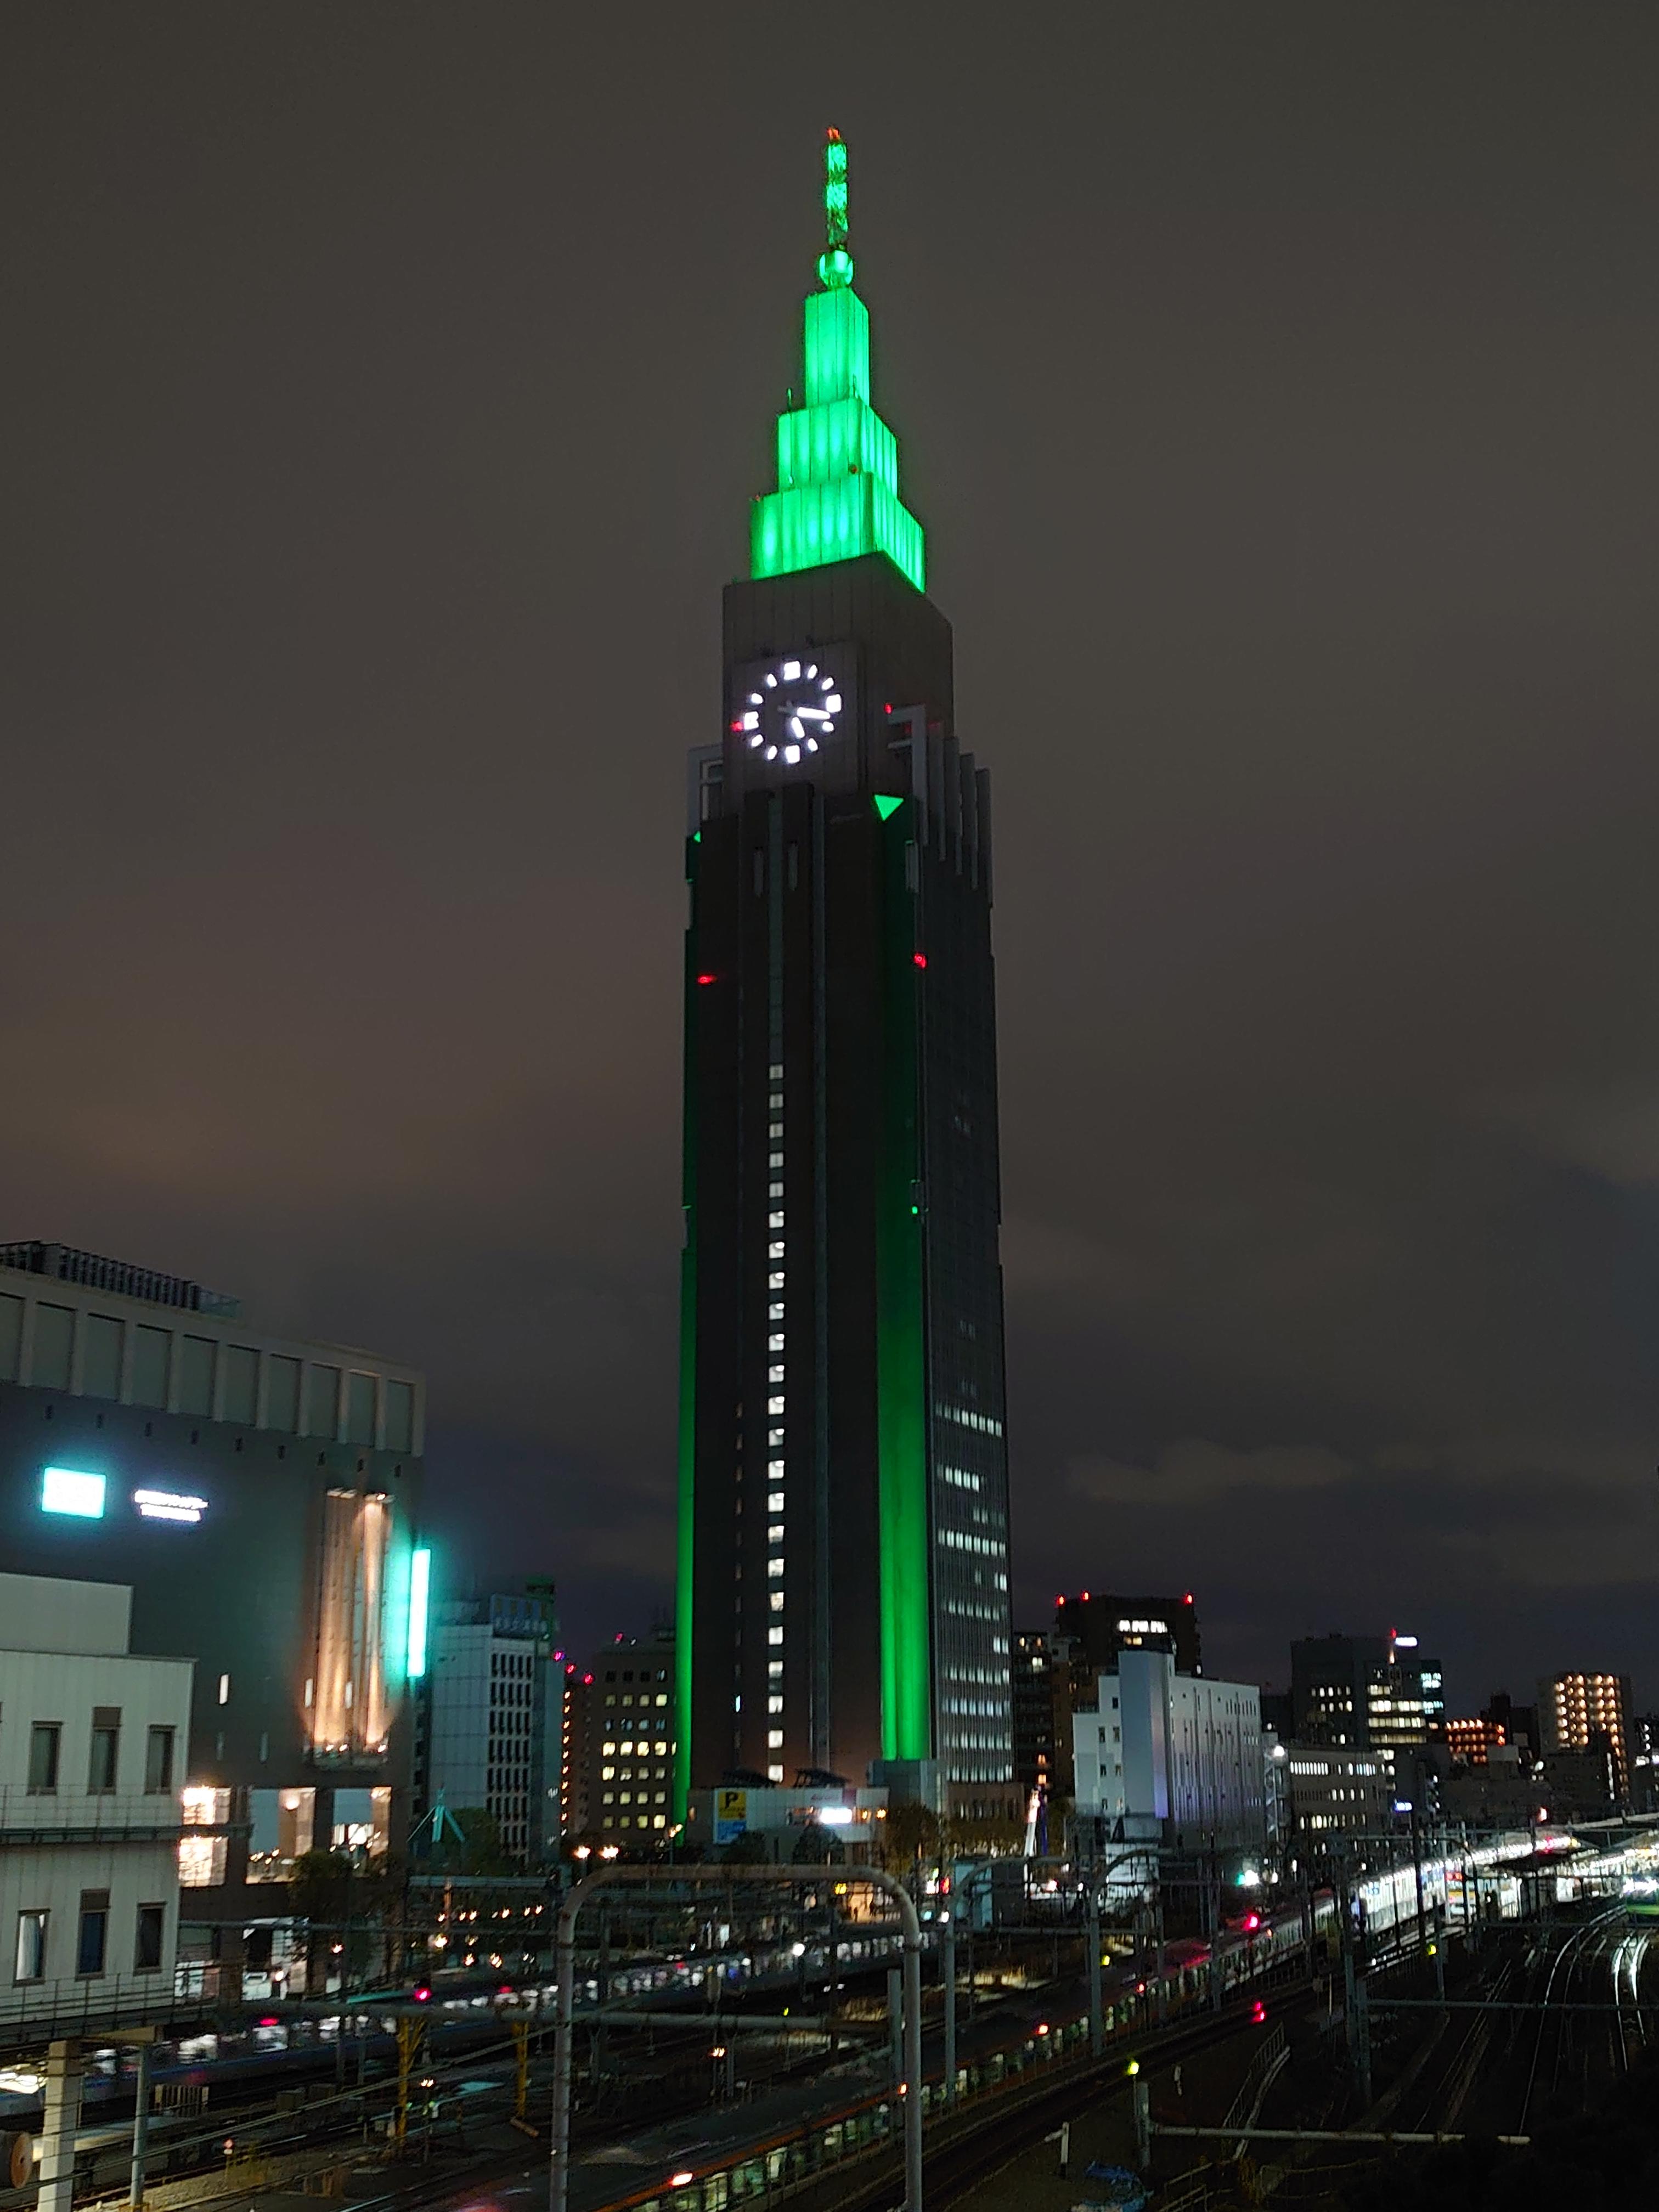 Nttドコモ 6月5日は 環境の日 本日 日本各地のランドマーク施設のライトアップカラーが 環境をイメージした グリーン に変わるそうです そこで ドコモ代々木ビル 100 再エネ も グリーン にライトアップしました 脱炭素社会実現への想いを